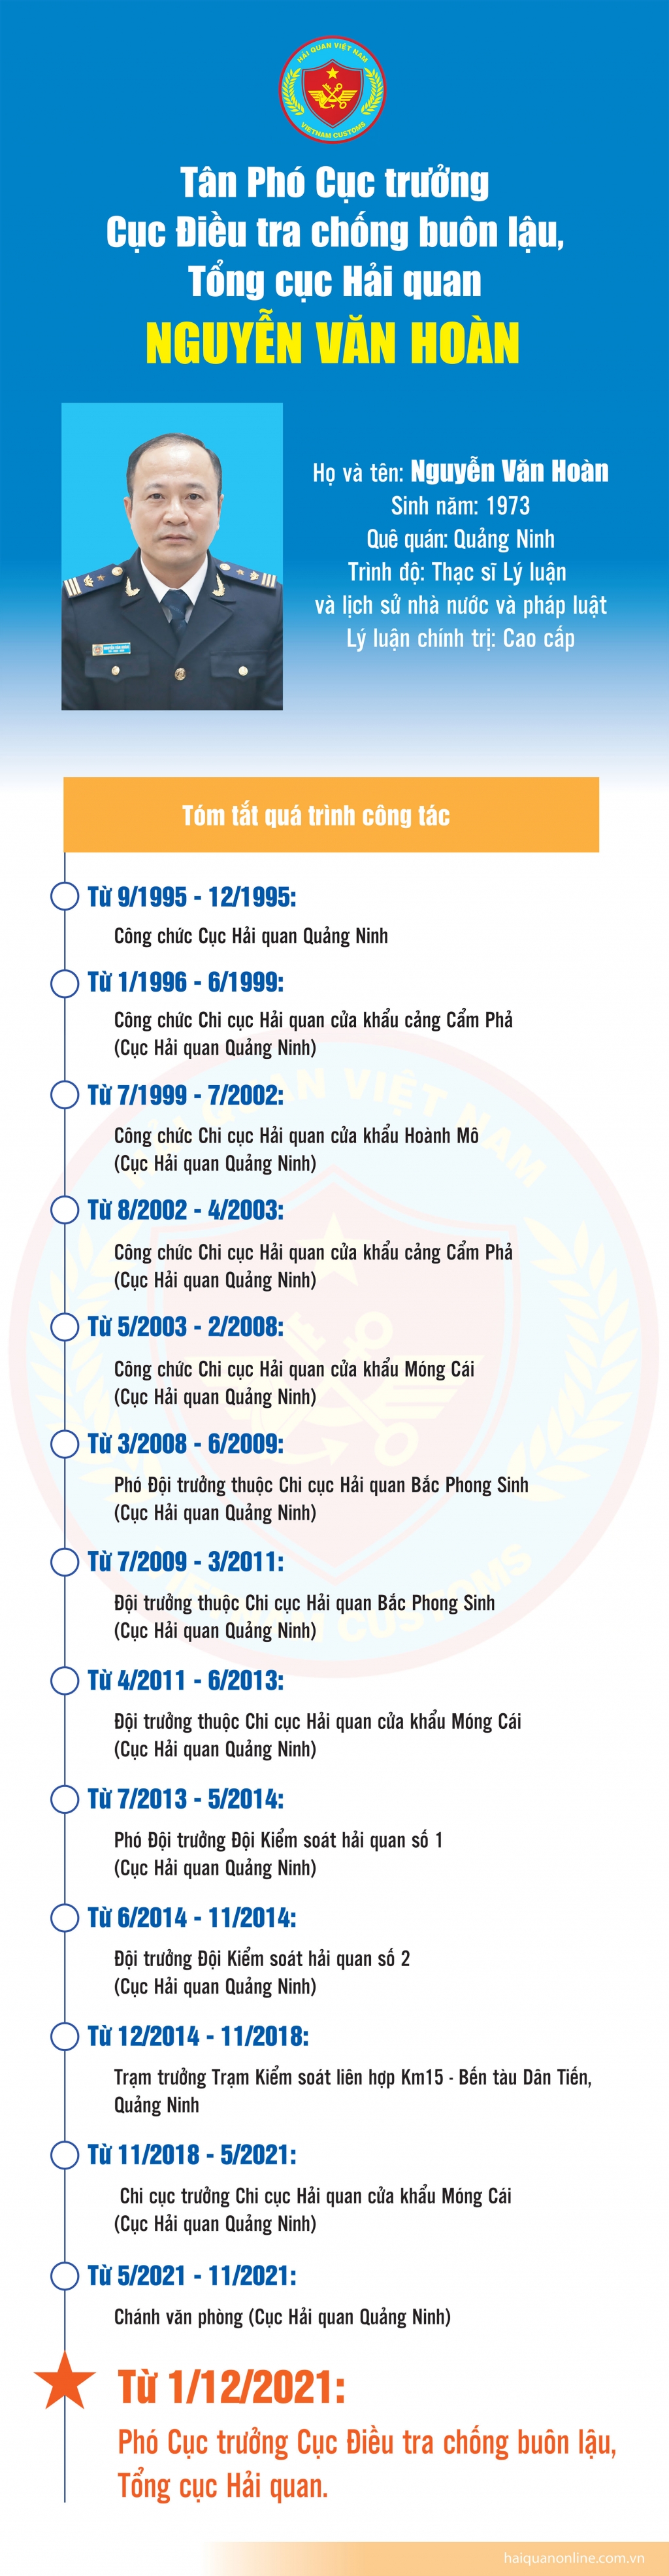 Infographics: Quá trình công tác của Phó Cục trưởng Cục Điều tra chống buôn lậu Nguyễn Văn Hoàn